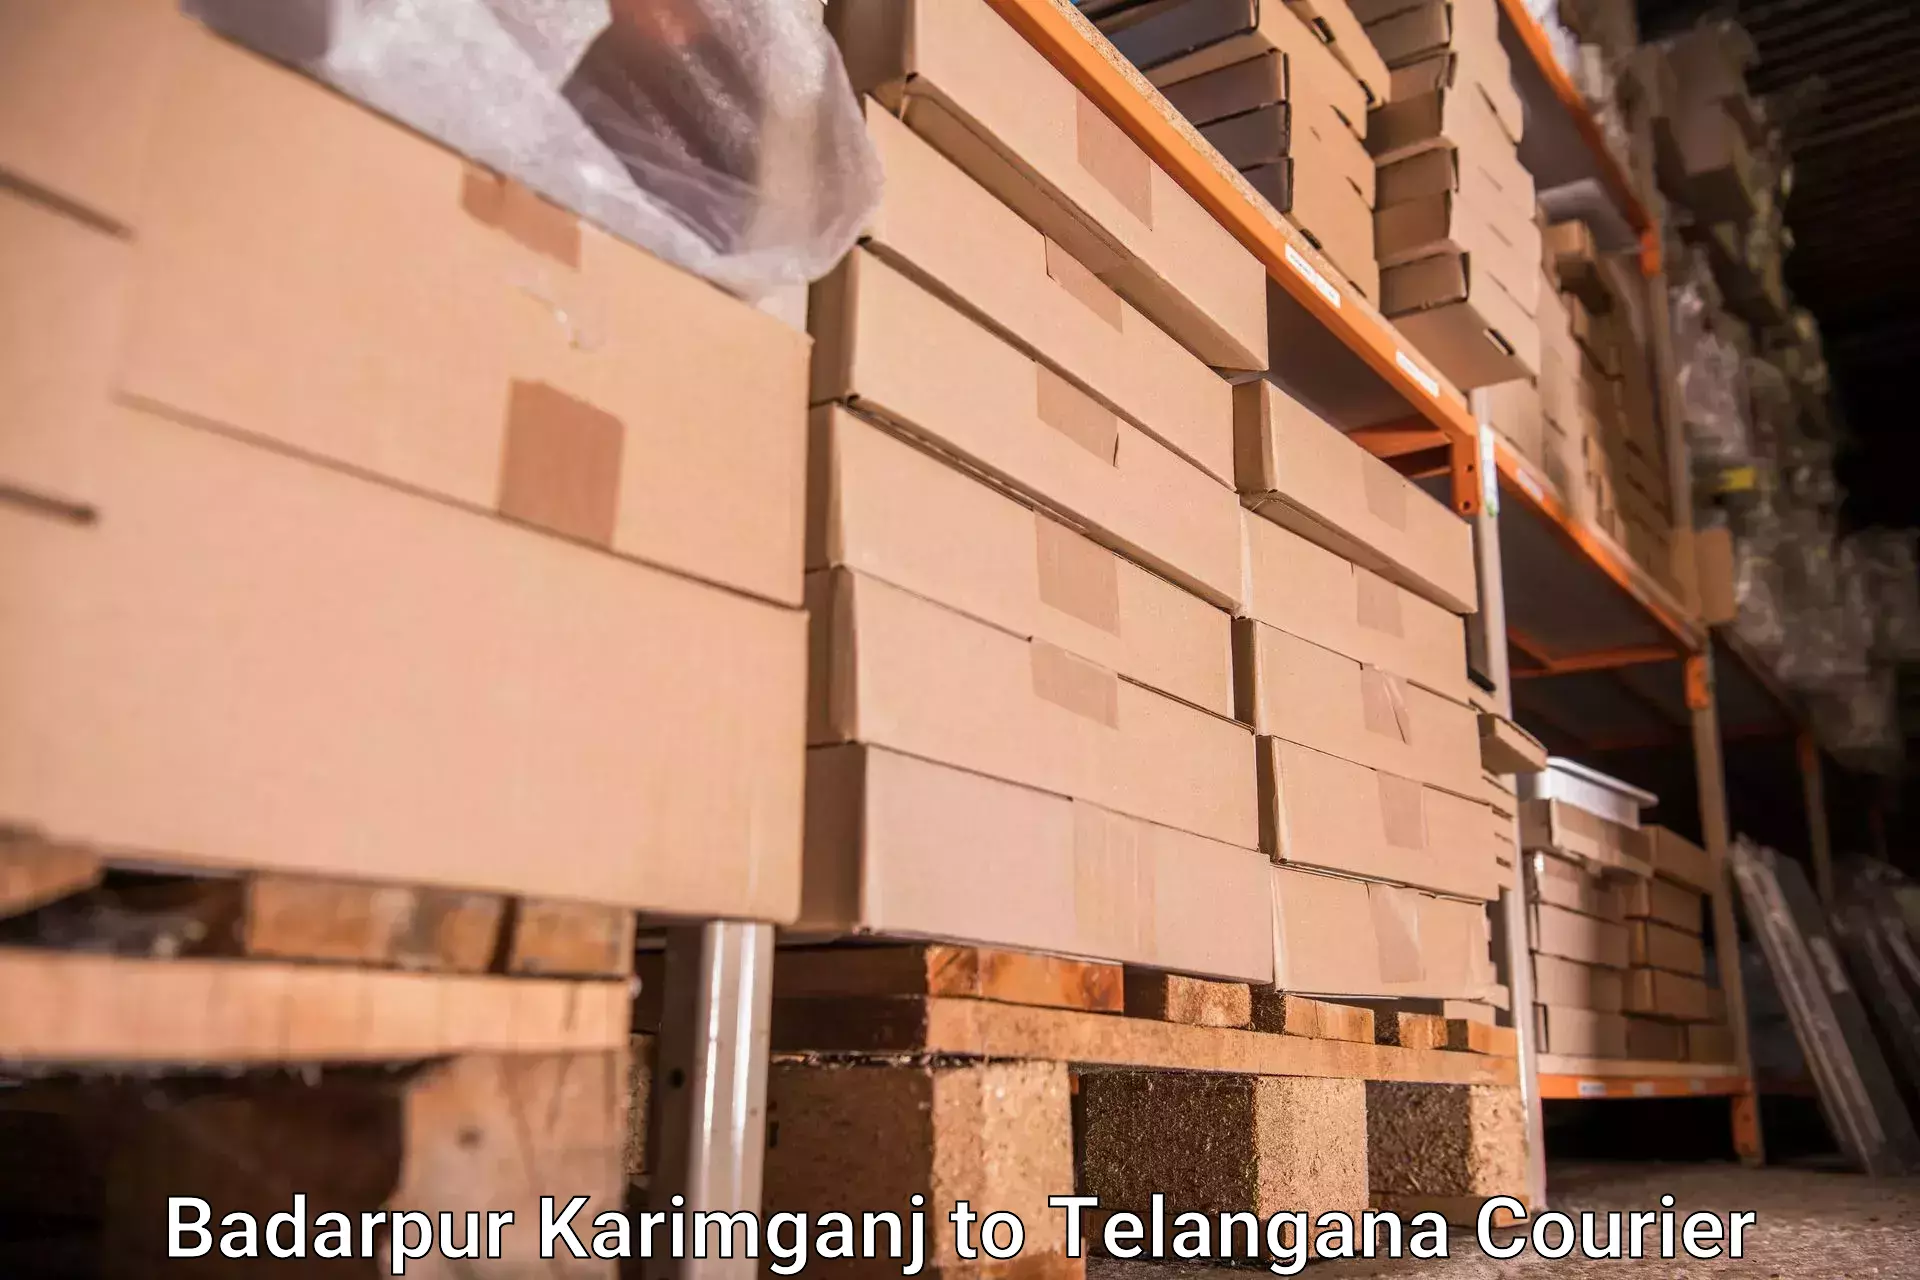 Baggage shipping experts Badarpur Karimganj to Bachupally